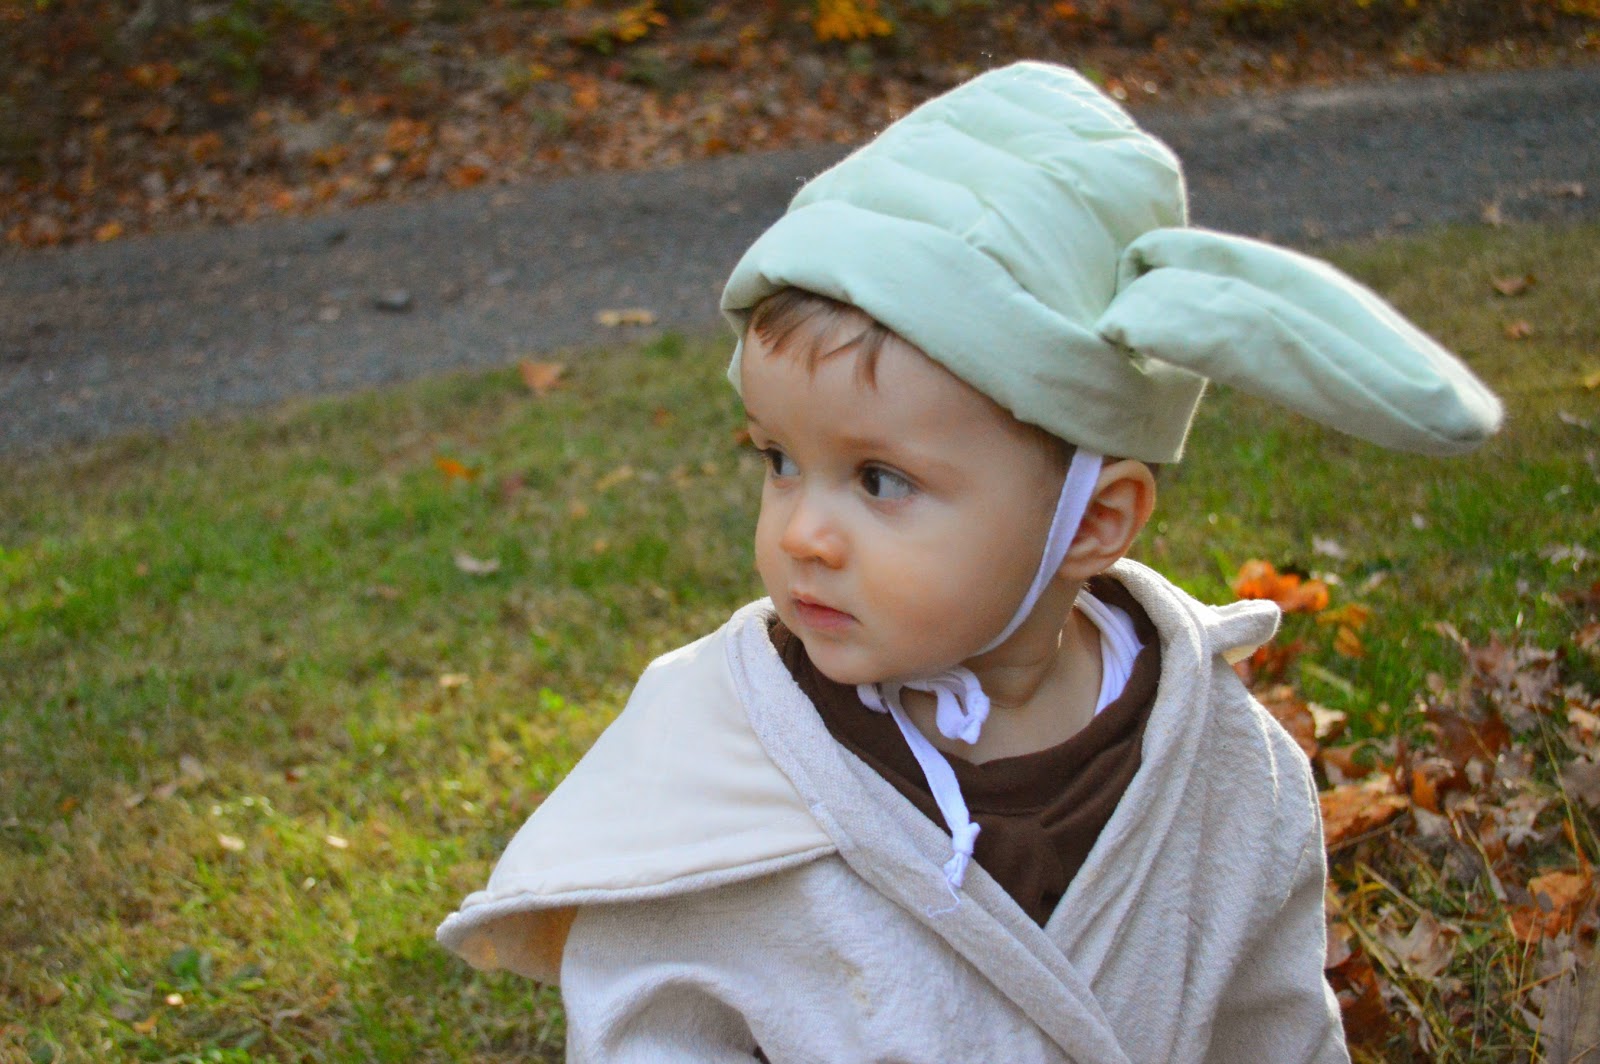 1001 Goals: DIY Luke Skywalker and Yoda Halloween Costumes